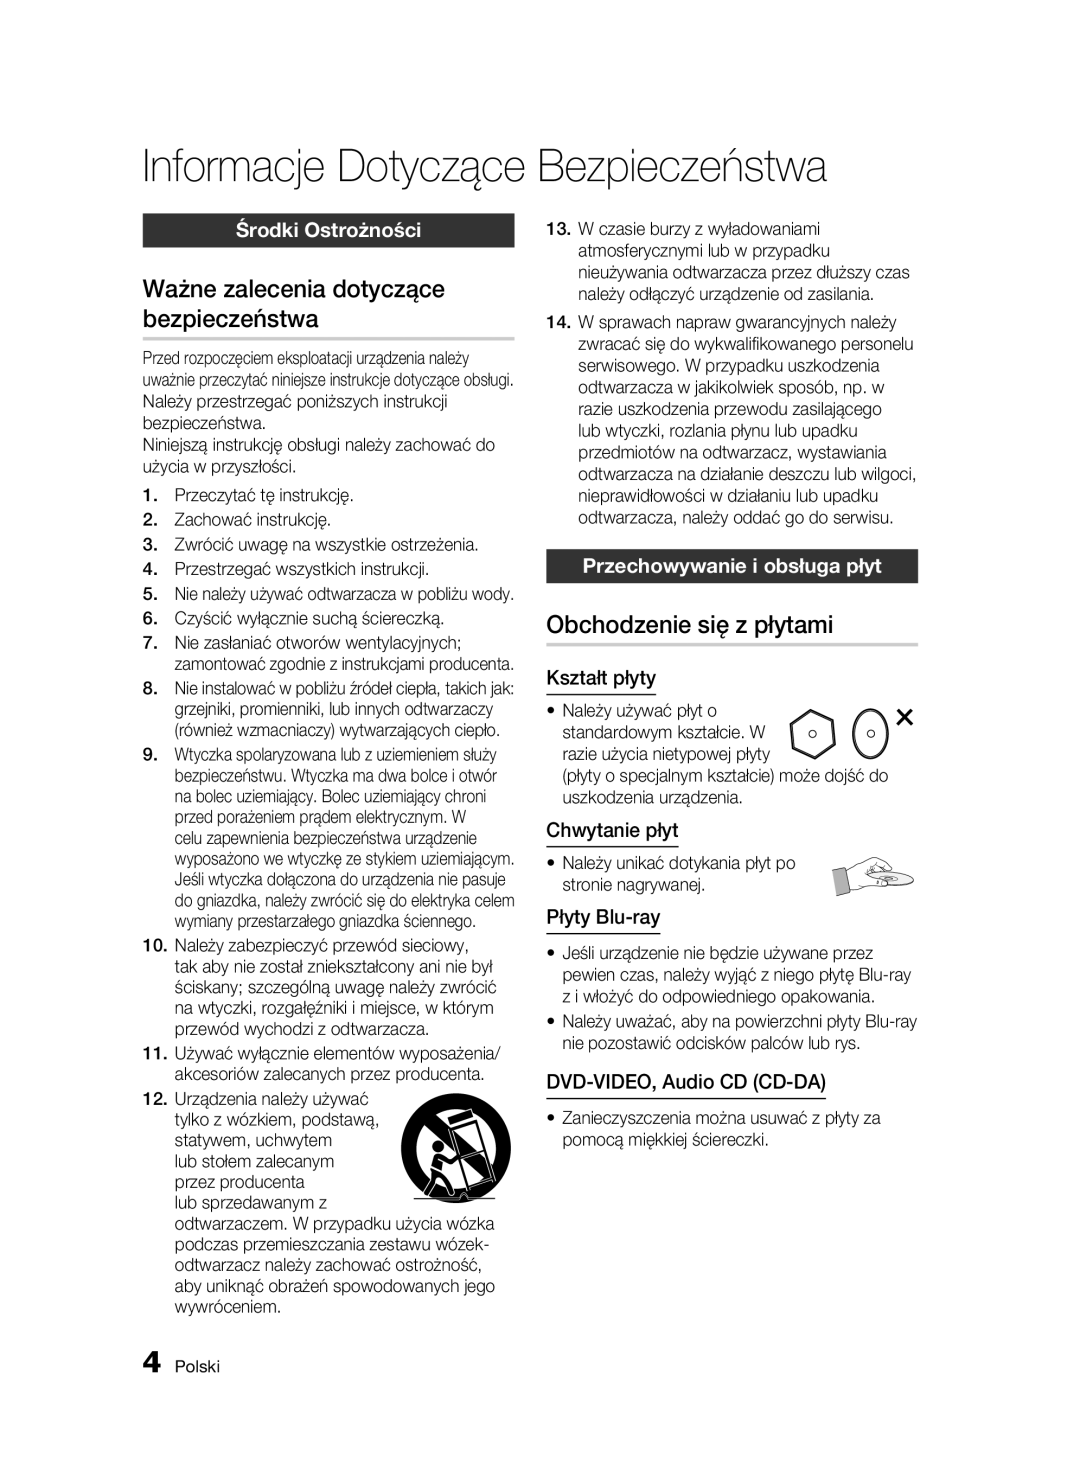 Samsung BD-C7500W/XEE manual Ważne zalecenia dotyczące bezpieczeństwa, Obchodzenie się z płytami, Środki Ostrożności 